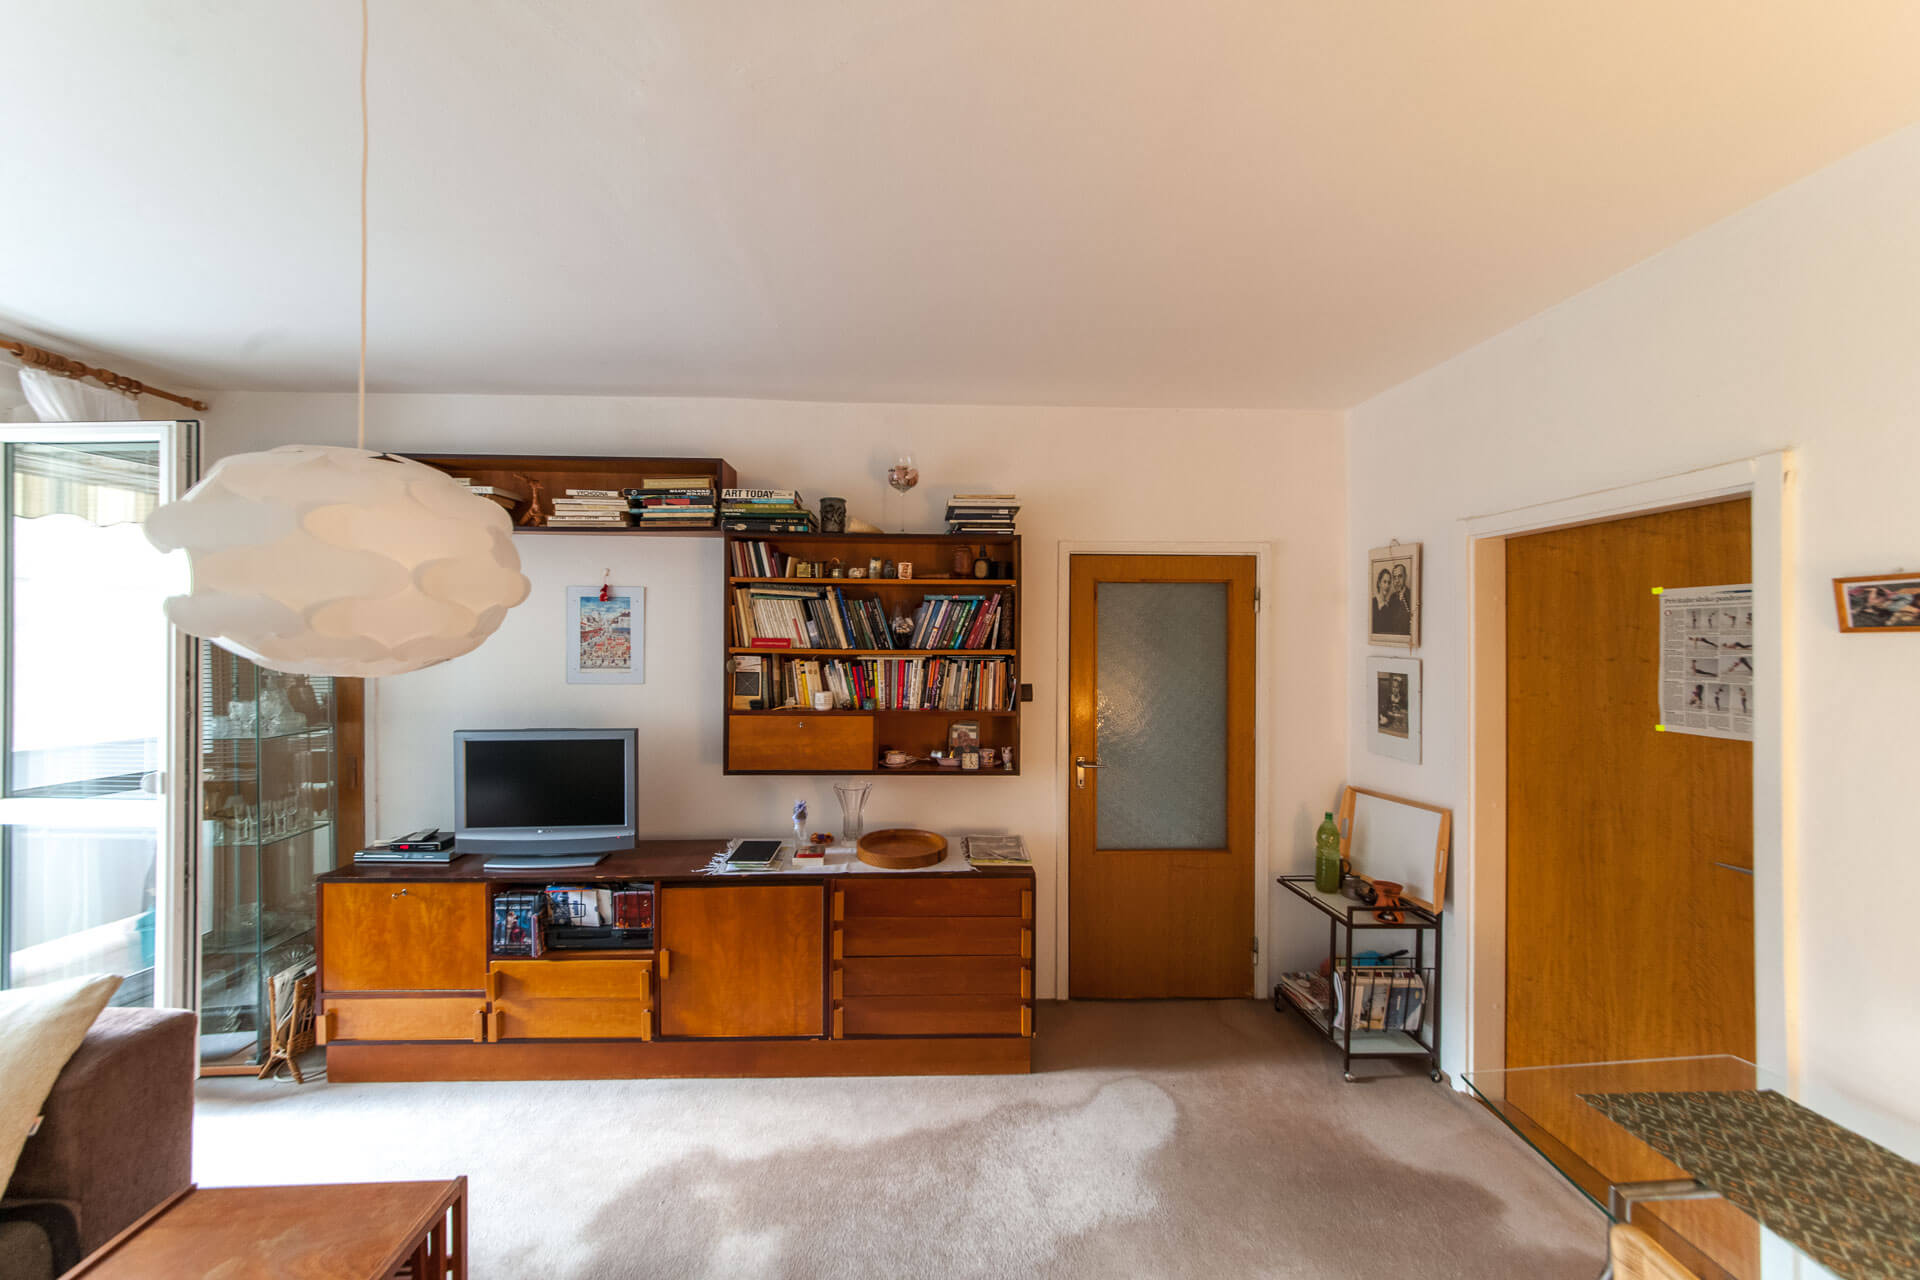 Predané – 4 izbový byt po čiastočnej rekonštrukcii s krásnym výhľadom 73m2 + 4m2 loggia-0